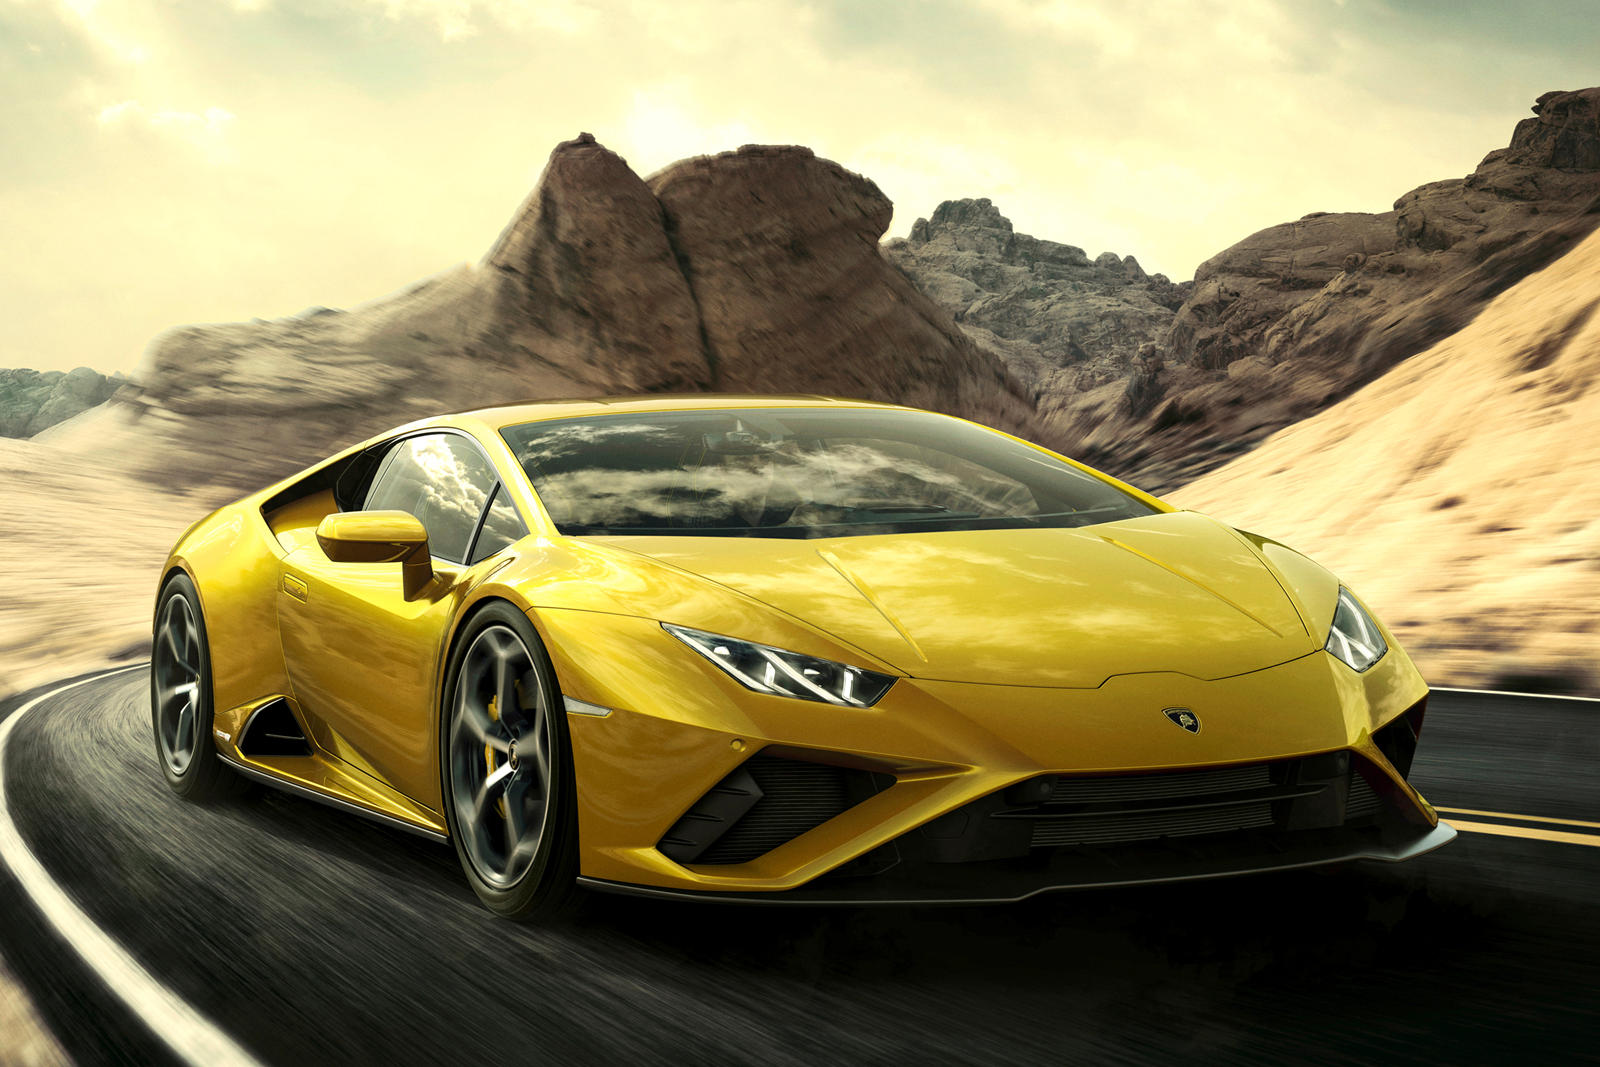 Завтра будет представлен новый таинственный Lamborghini